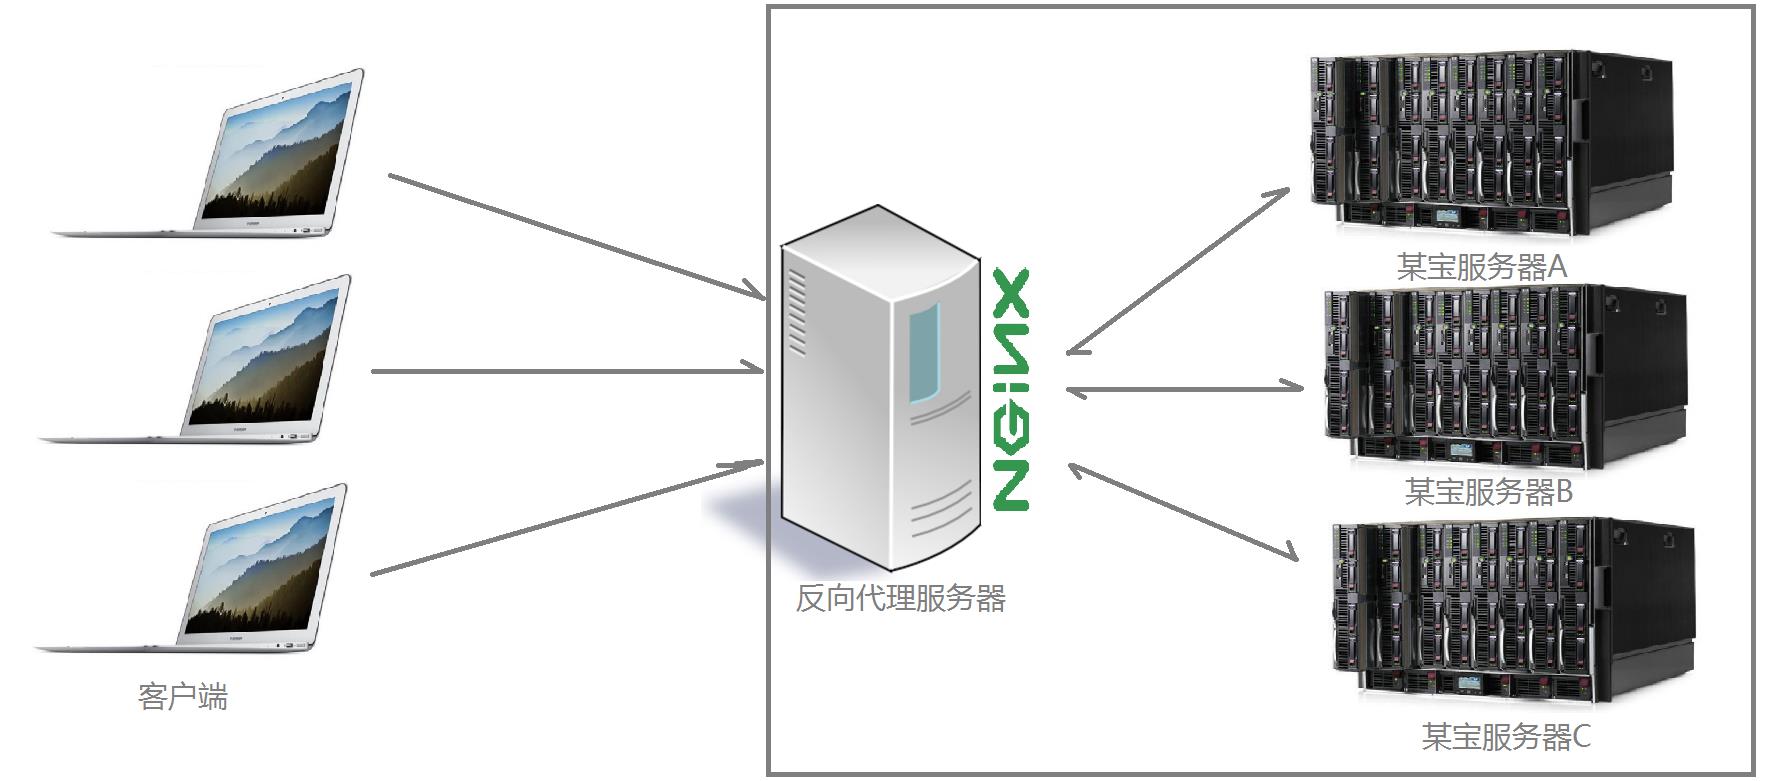 nginx - 文章图片